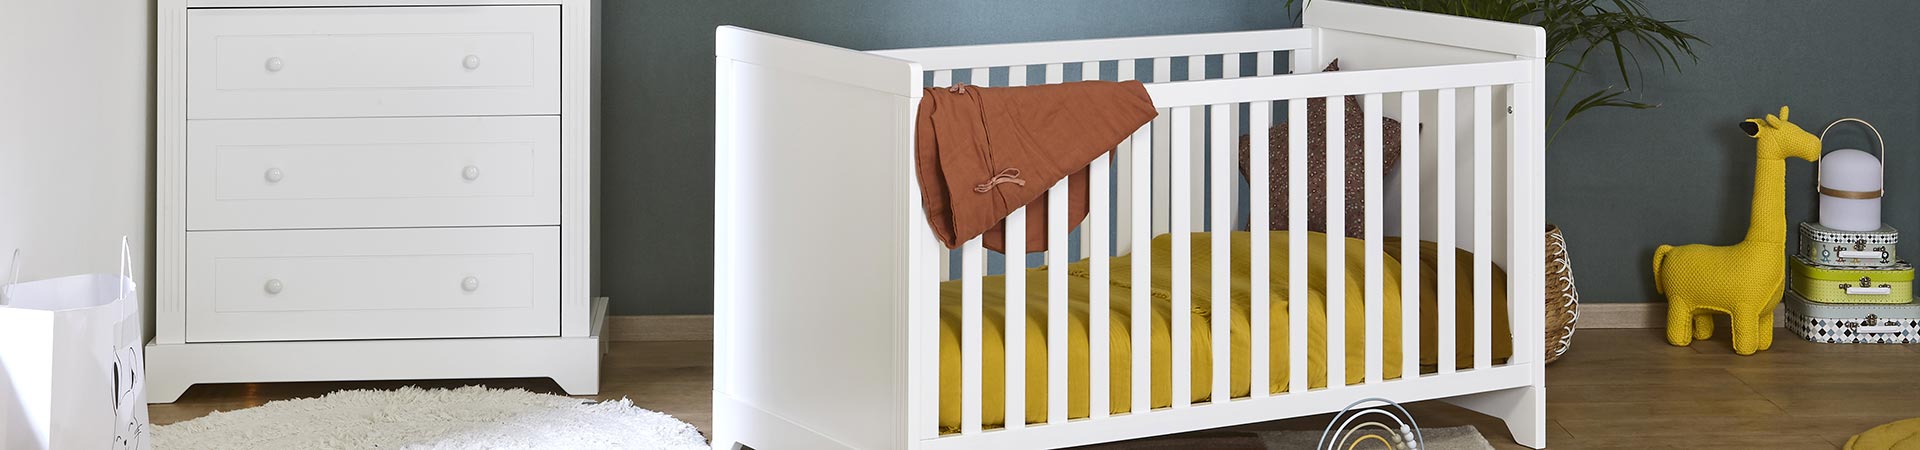 Habitación bebé y mobiliario bebé